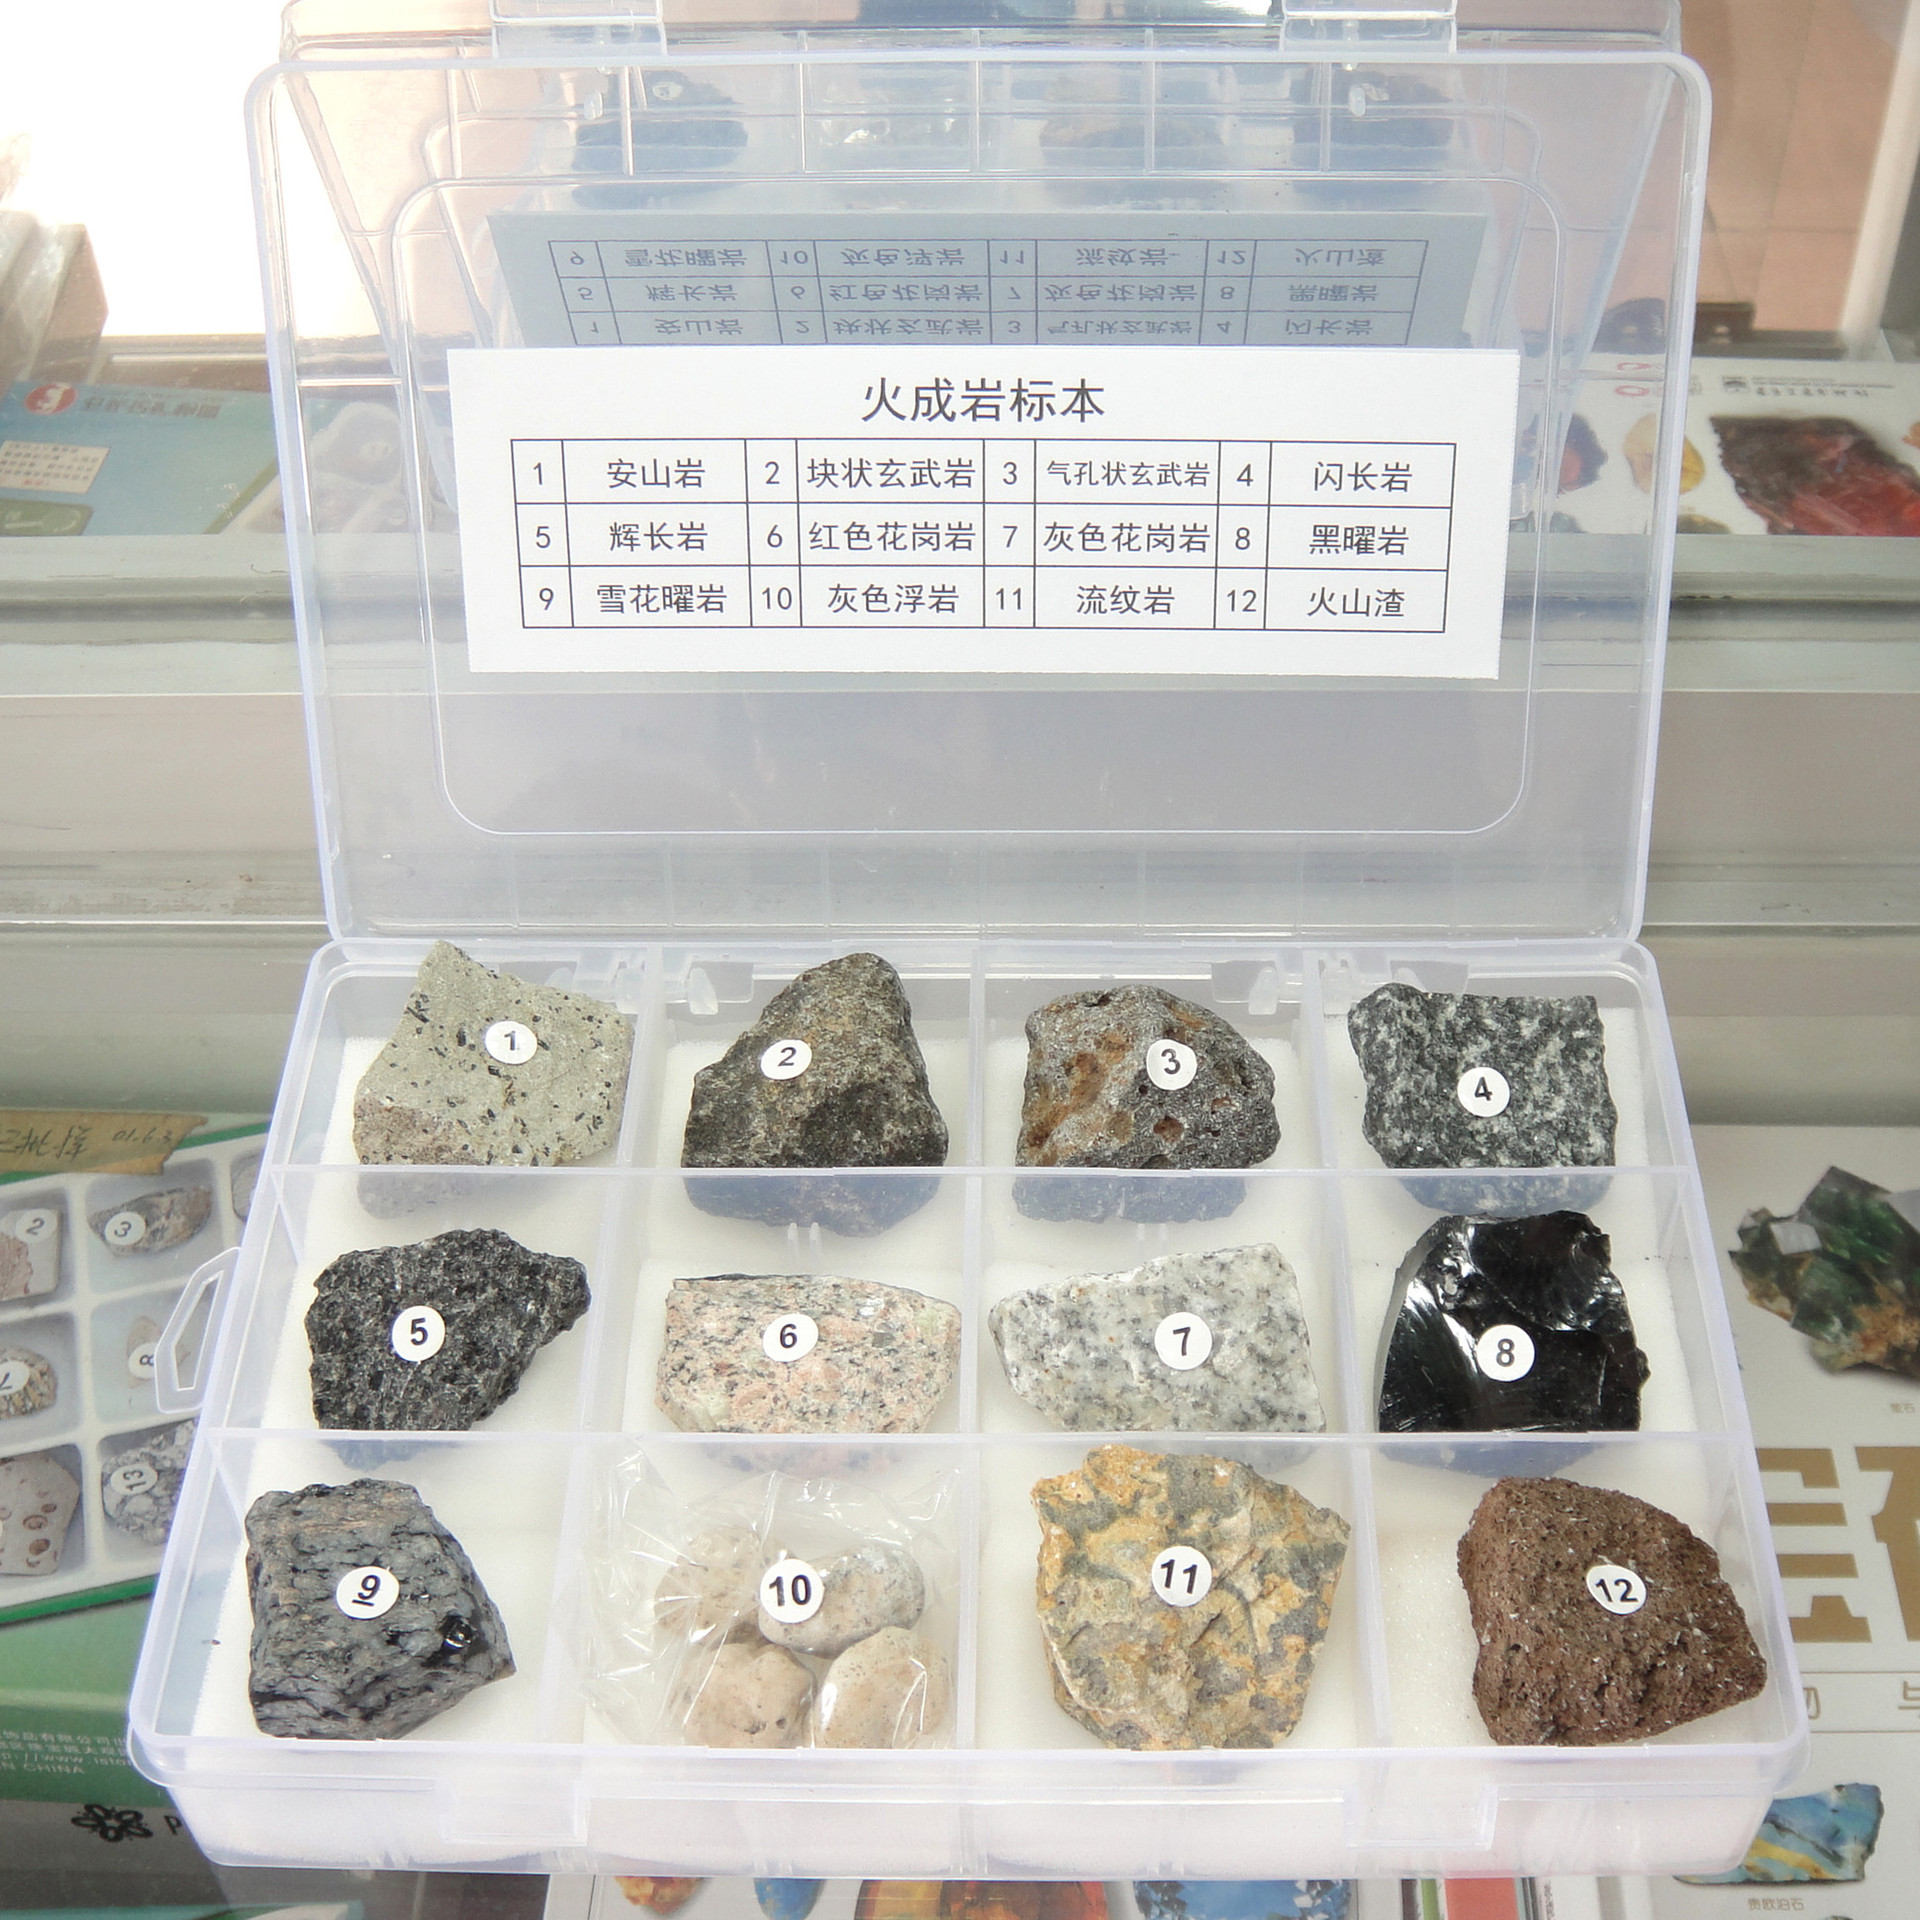 超值***齐全矿物岩石标本套装 整套18盒标本包邮 集聚200种矿物